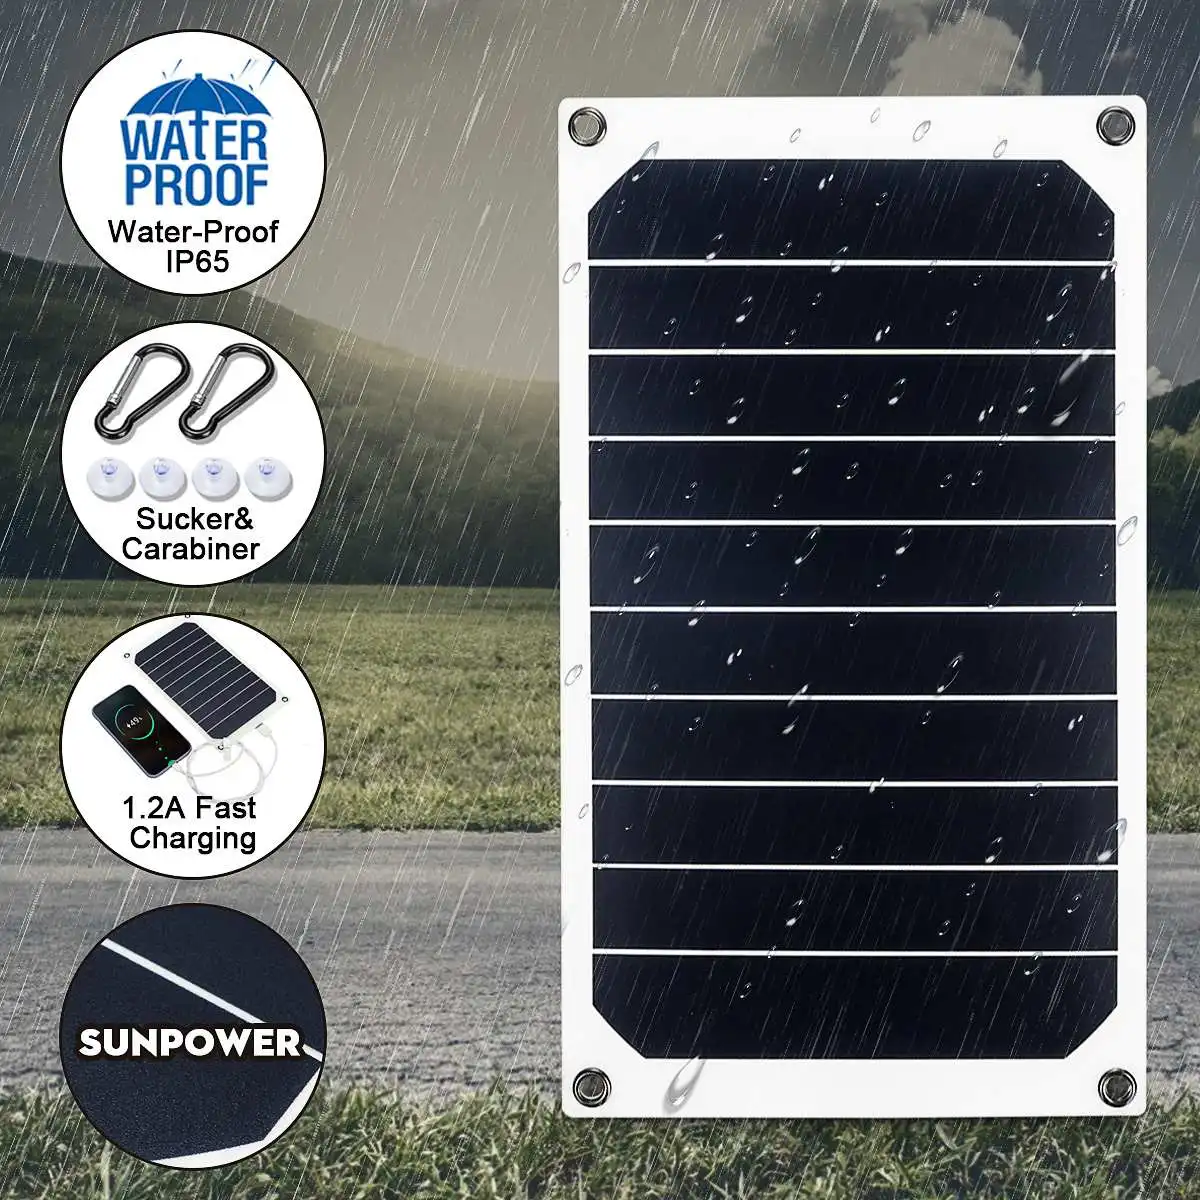 LEORY Гибкая панель солнечных батарей 10 Вт солнечное зарядное устройство для автомобильного аккумулятора 6 В батарея для зарядки телефона Sunpower монокристаллические ячейки